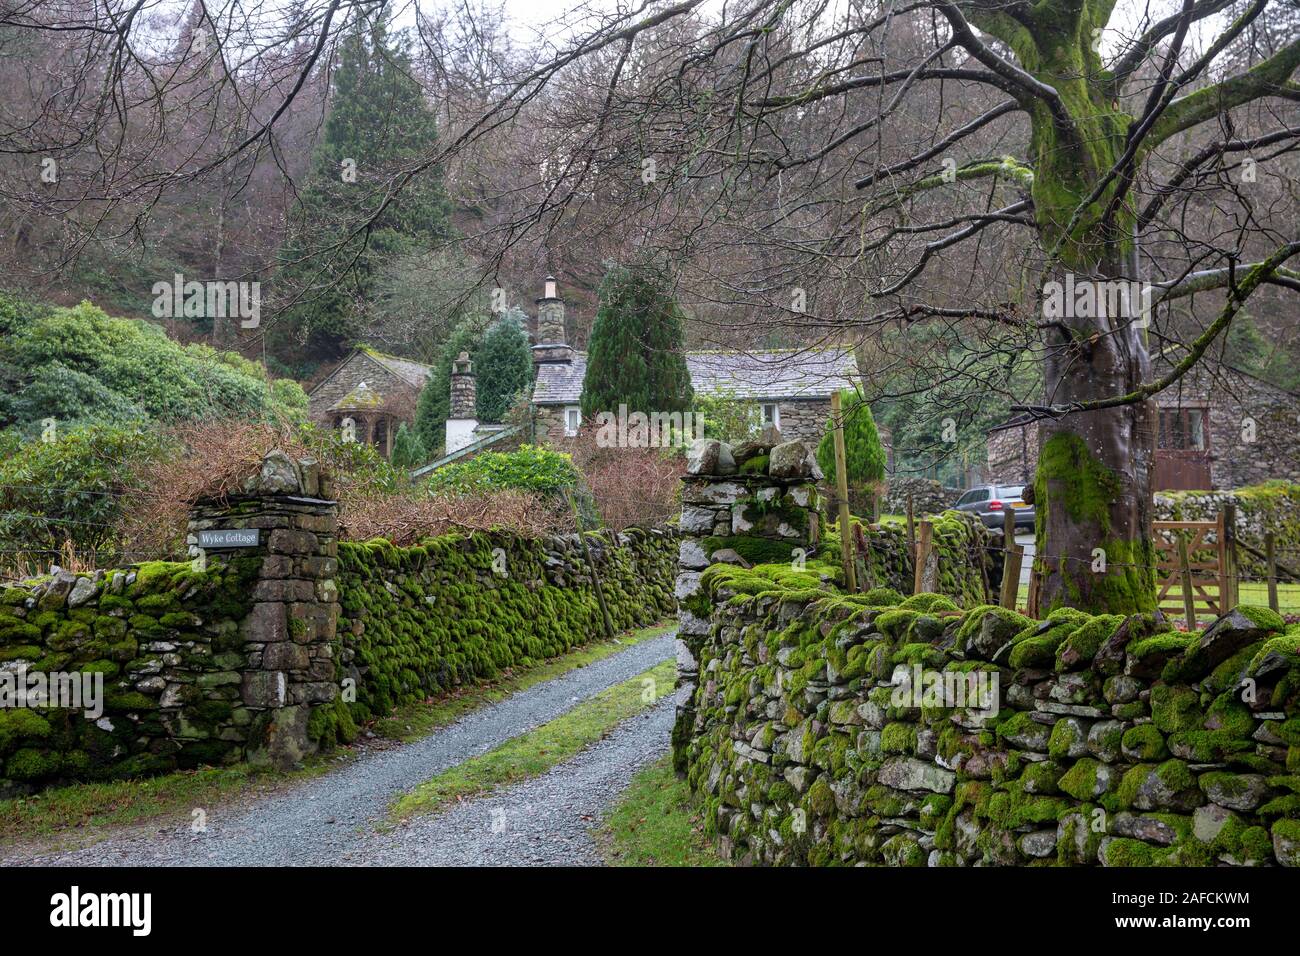 Villaggio di Grasmere e un muro di pietra a secco ricoperto di muschio in un giorno d'inverno, Lake District, Cumbria, Inghilterra. Foto Stock